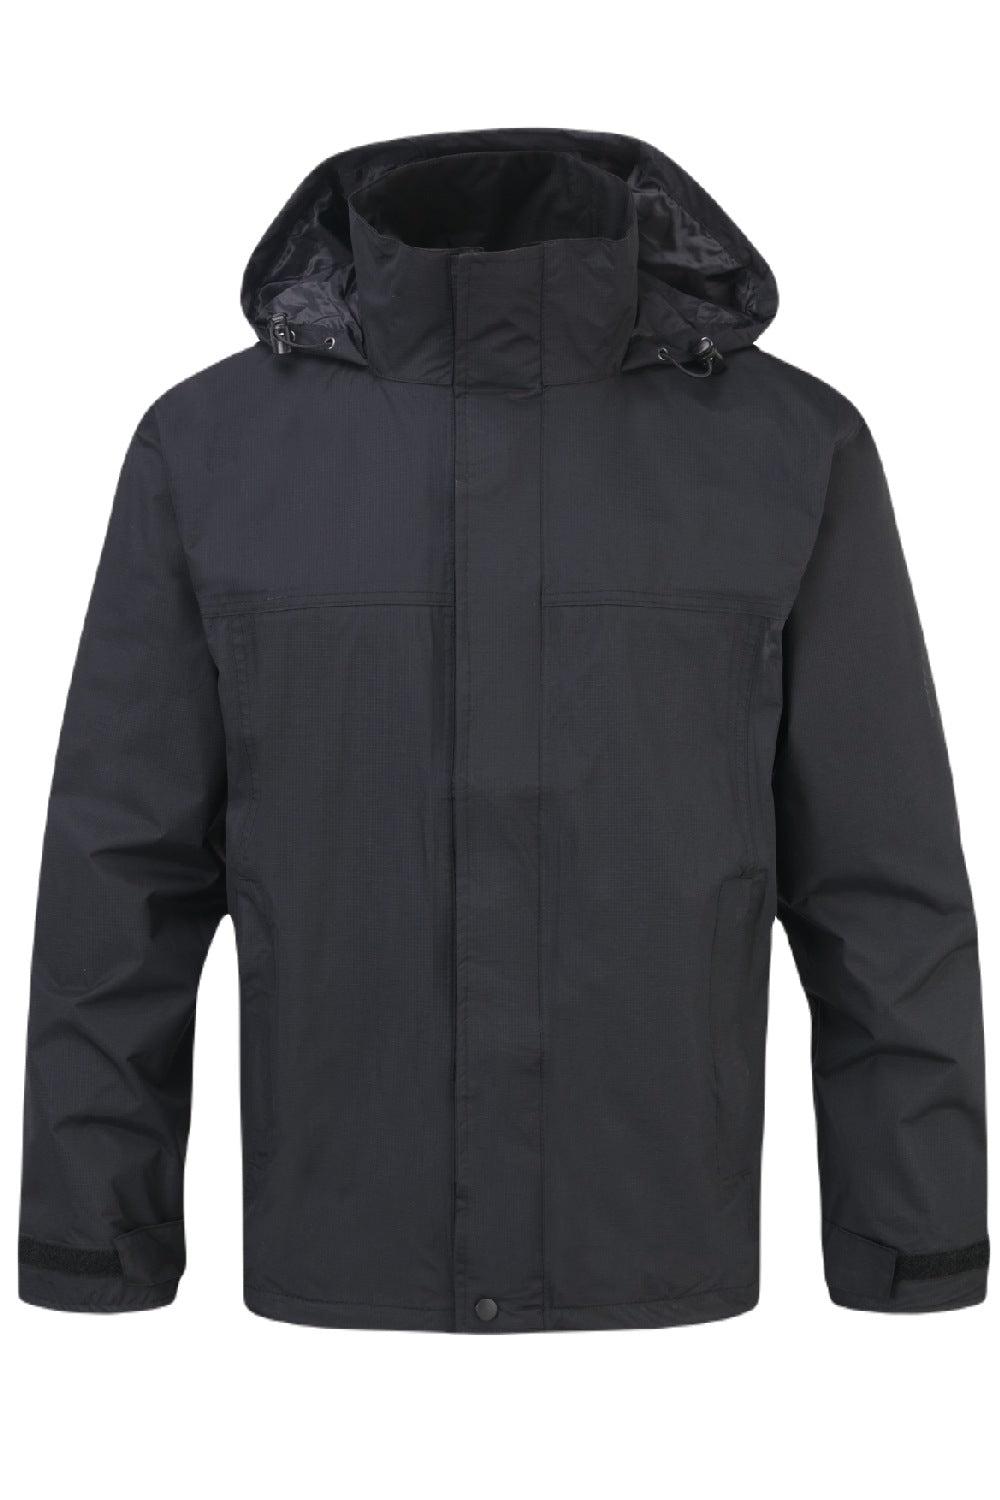 Fort Rutland Waterproof Jacket in Black